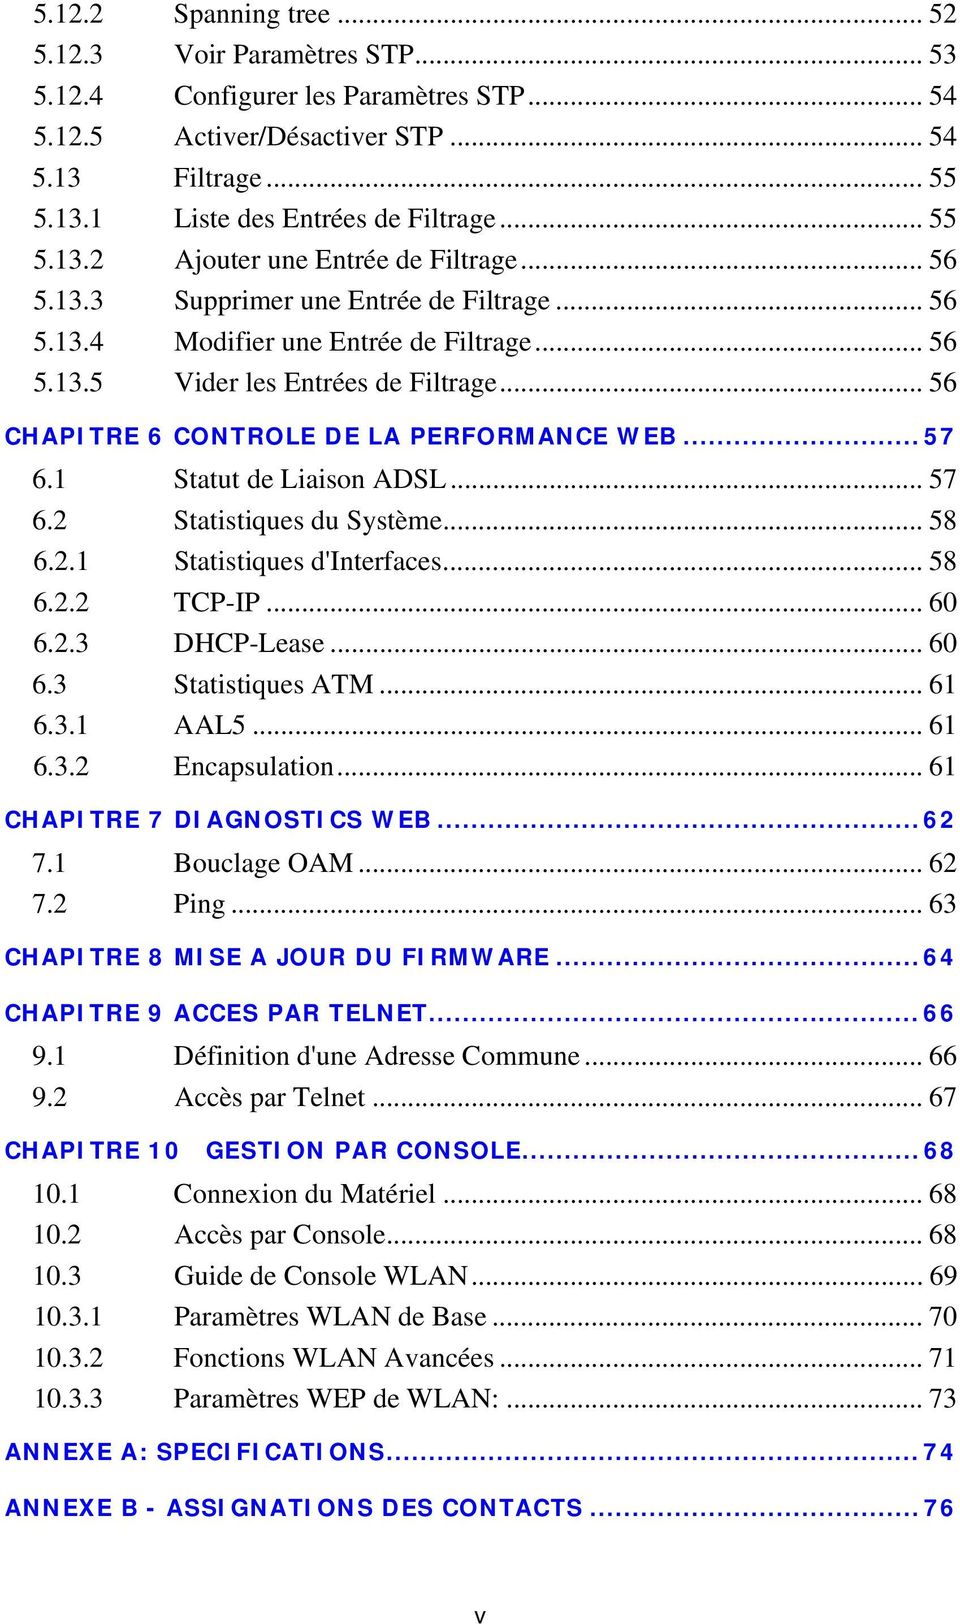 .. 56 CHAPITRE 6 CONTROLE DE LA PERFORMANCE WEB... 57 6.1 Statut de Liaison ADSL... 57 6.2 Statistiques du Système... 58 6.2.1 Statistiques d'interfaces... 58 6.2.2 TCP-IP... 60 6.2.3 DHCP-Lease.